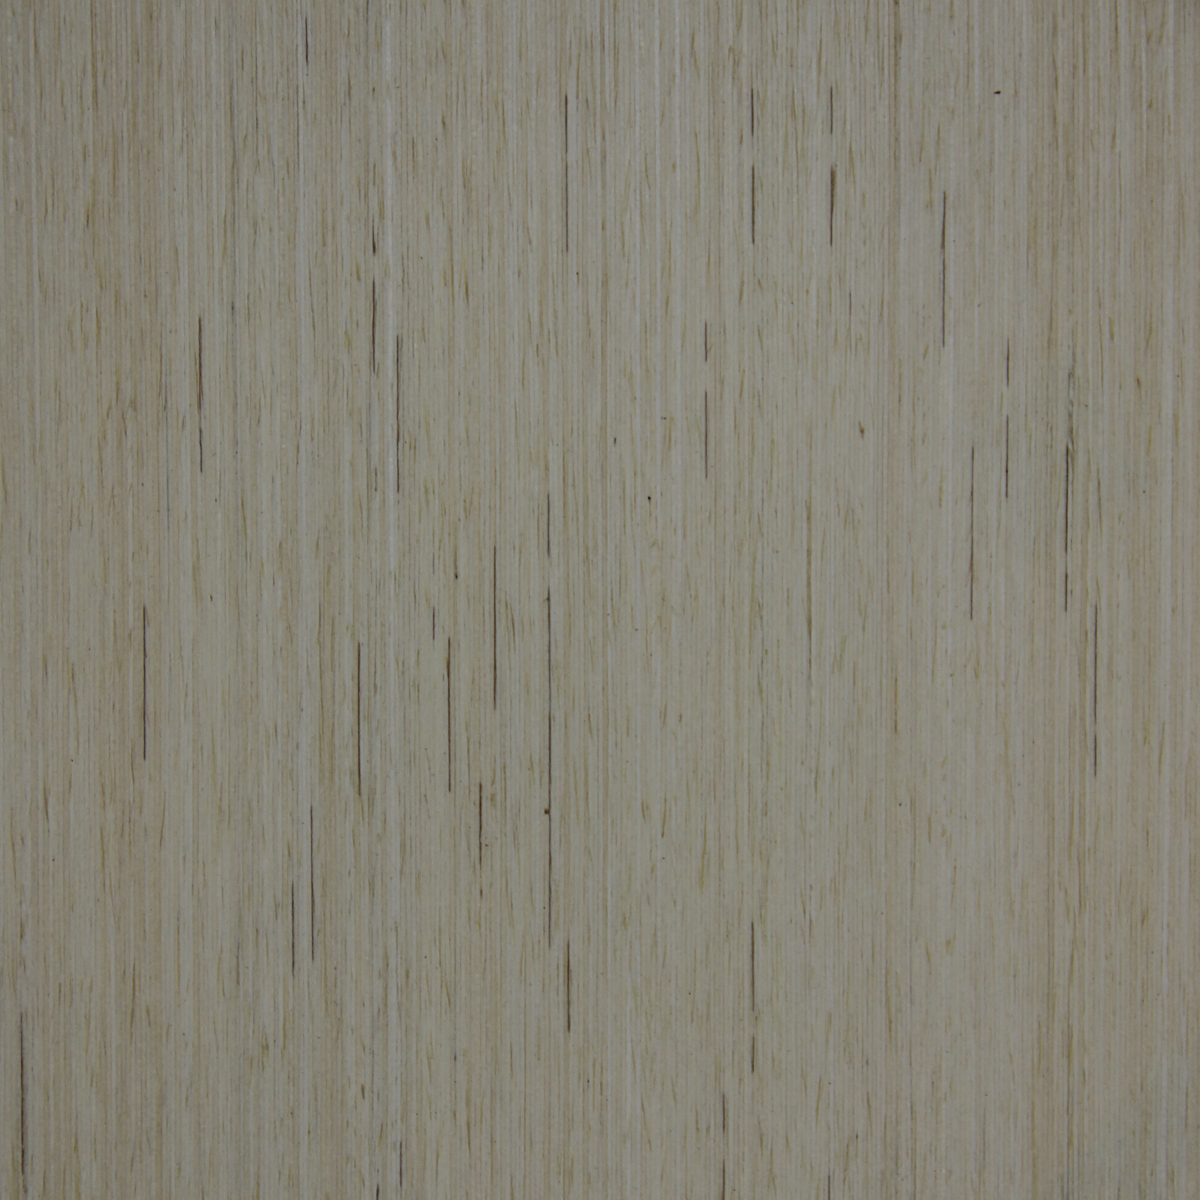 Candlenut (Truewood) - Timber Veneer & Plywood Species